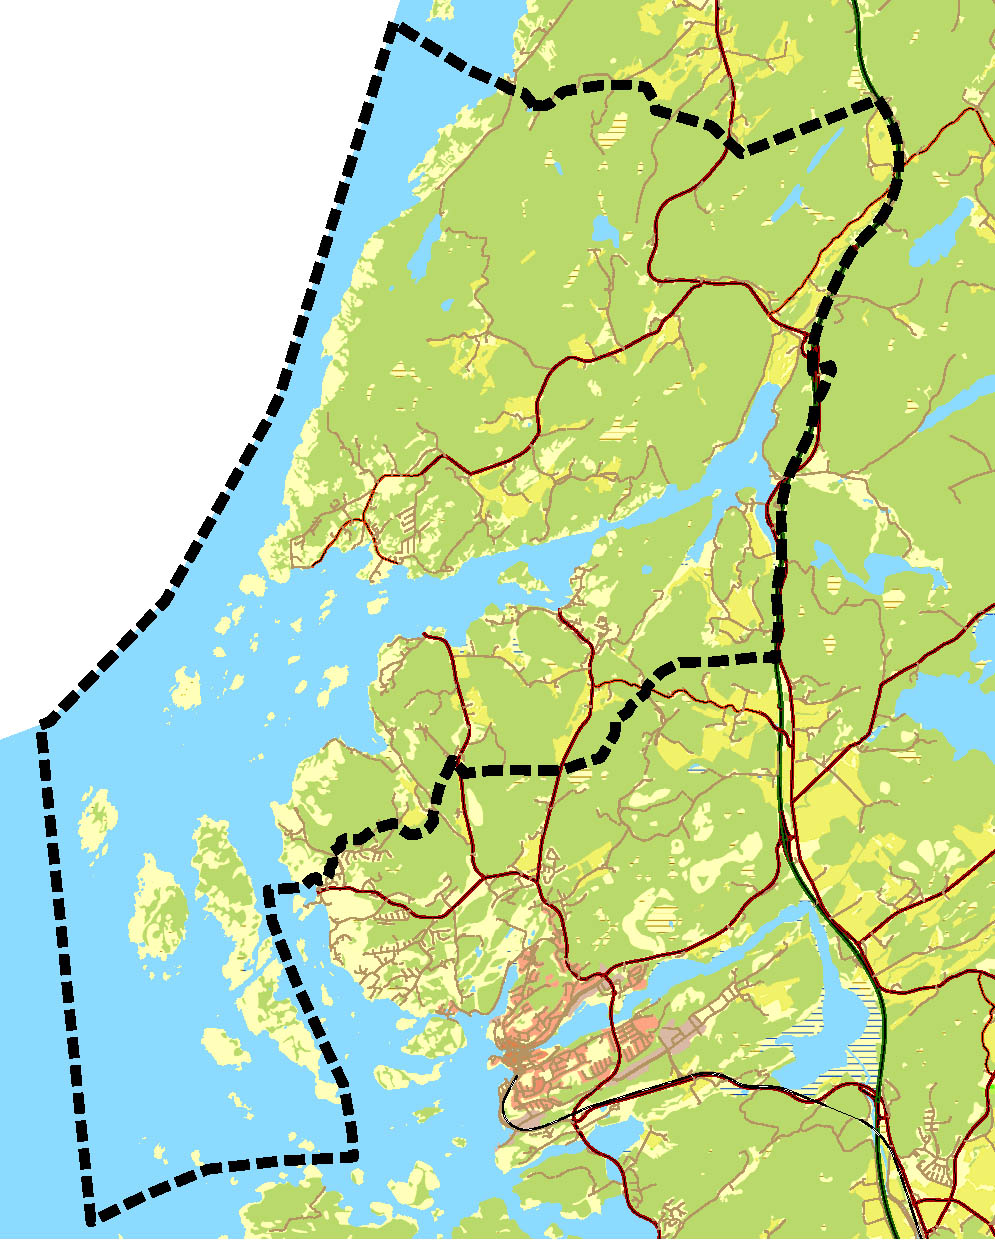 orienteringskarta över norra kustområdet